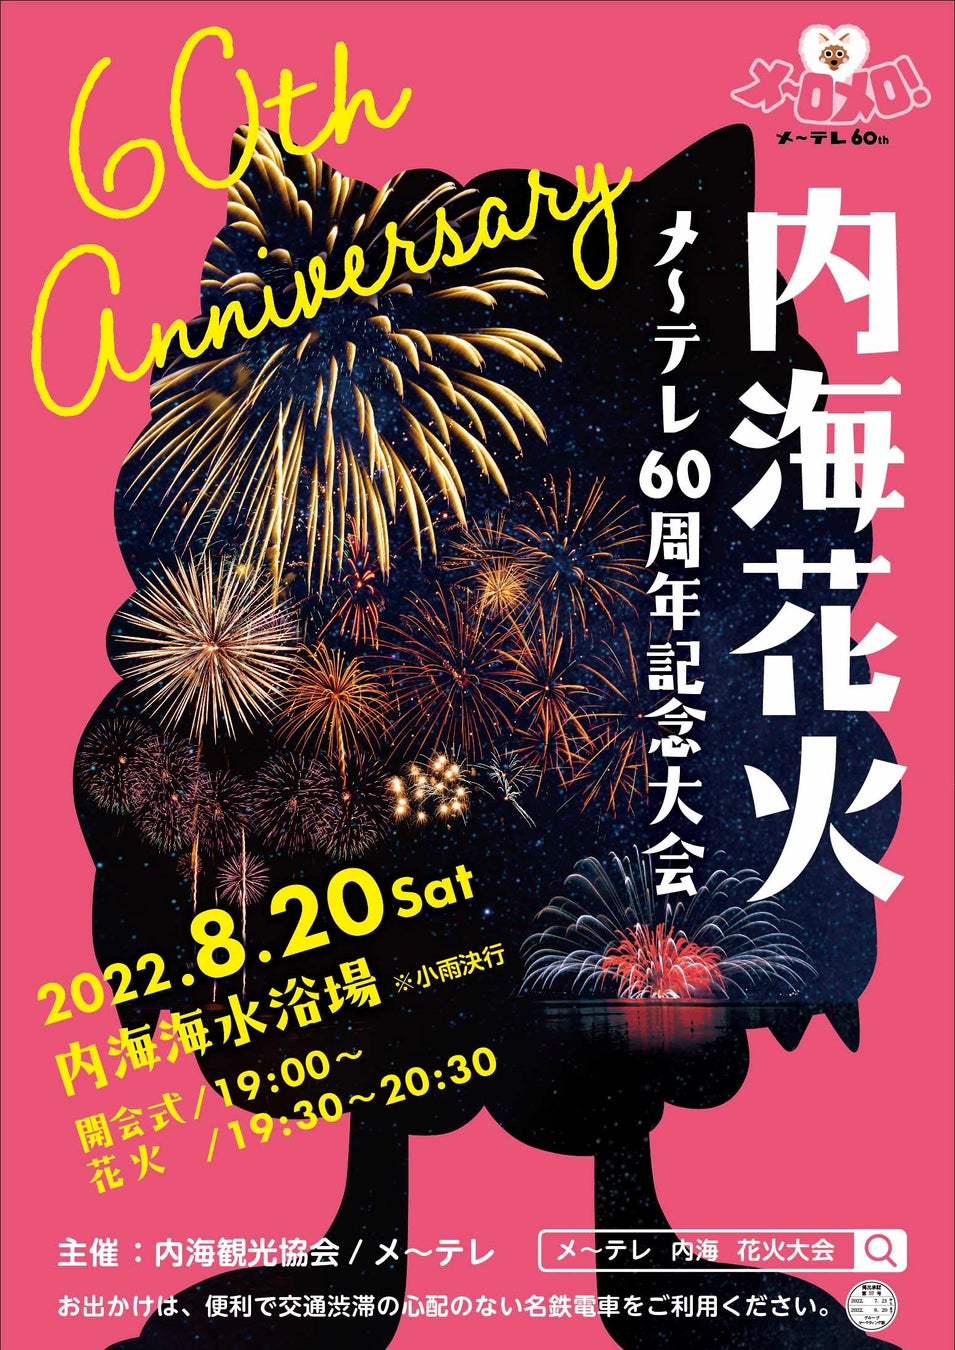 原宿のセレクトショップDOMICILE TOKYOが5周年を記念し、NYを拠点とするLQQKSTUDIOと手を組みポップアップストアと周年記念パーティを開催！